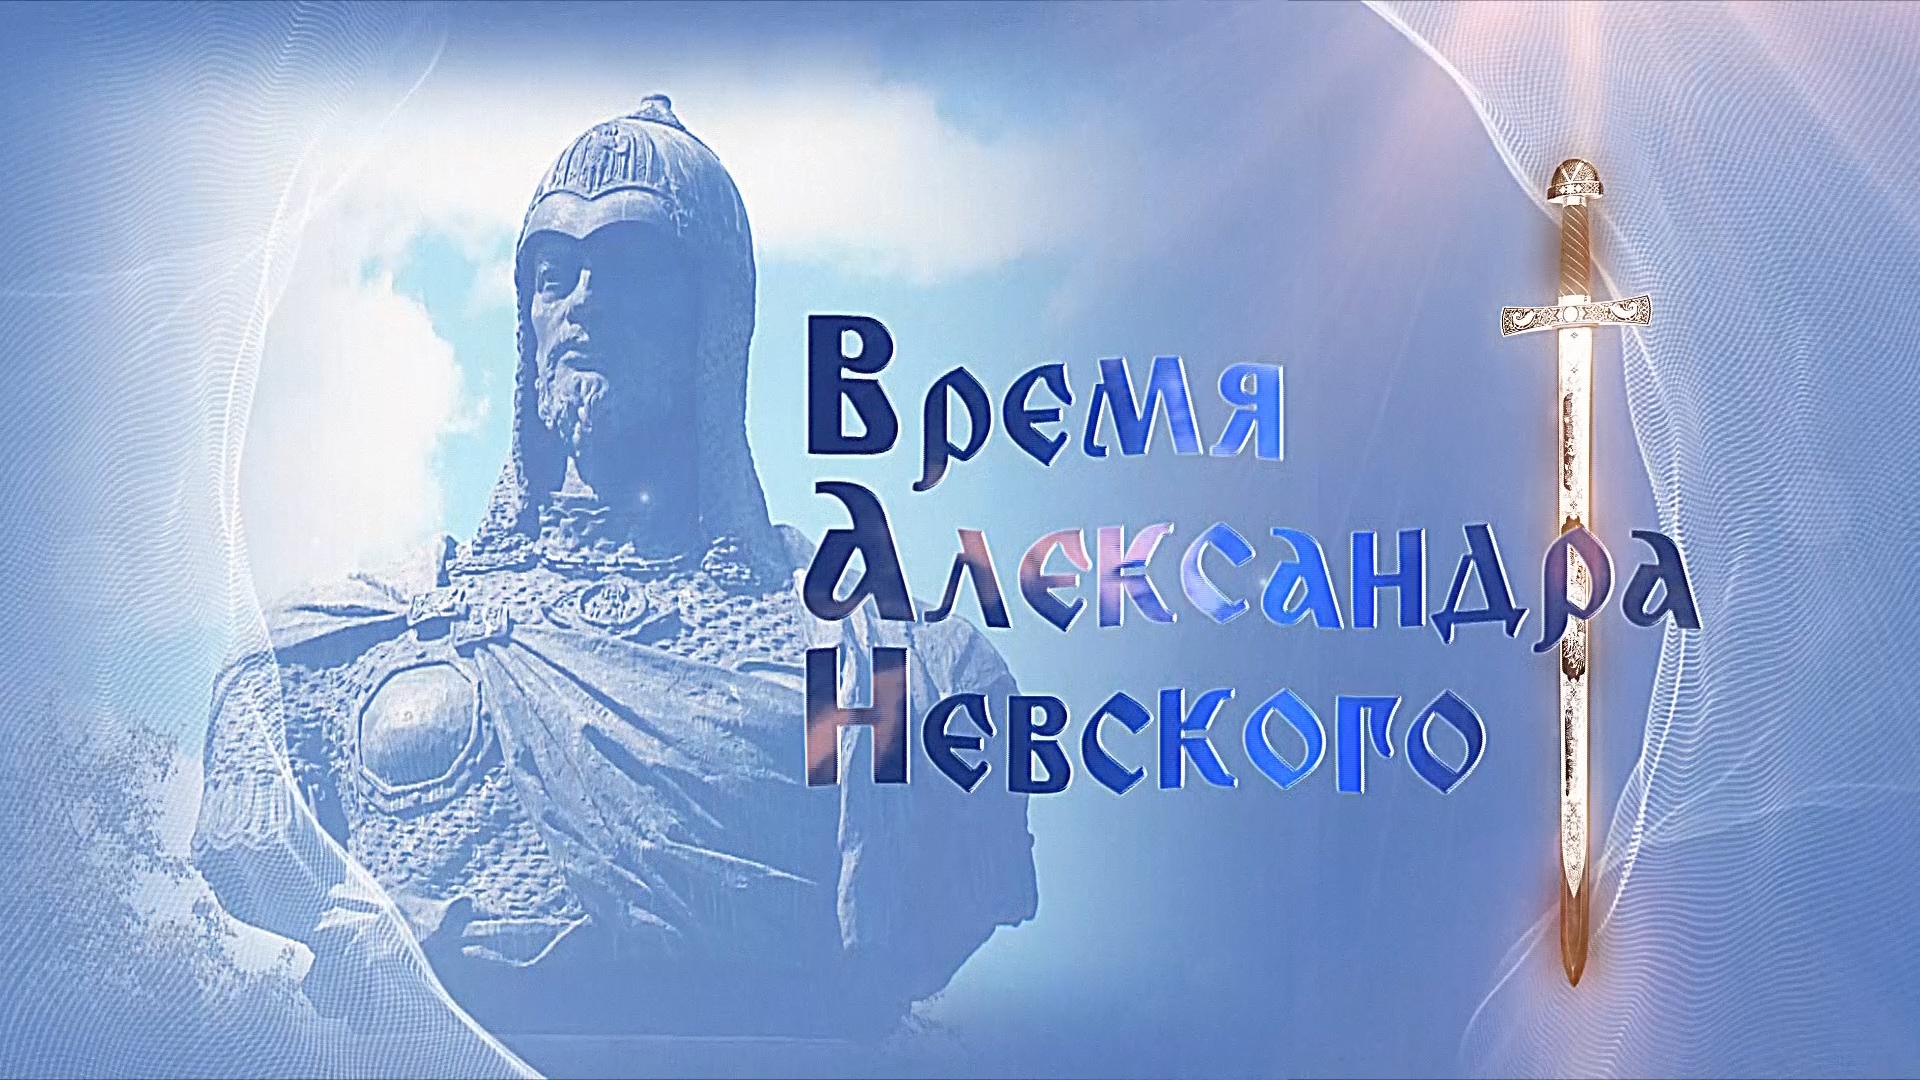 Реконструкция конного похода Александра Невского начнется на Ярославской земле